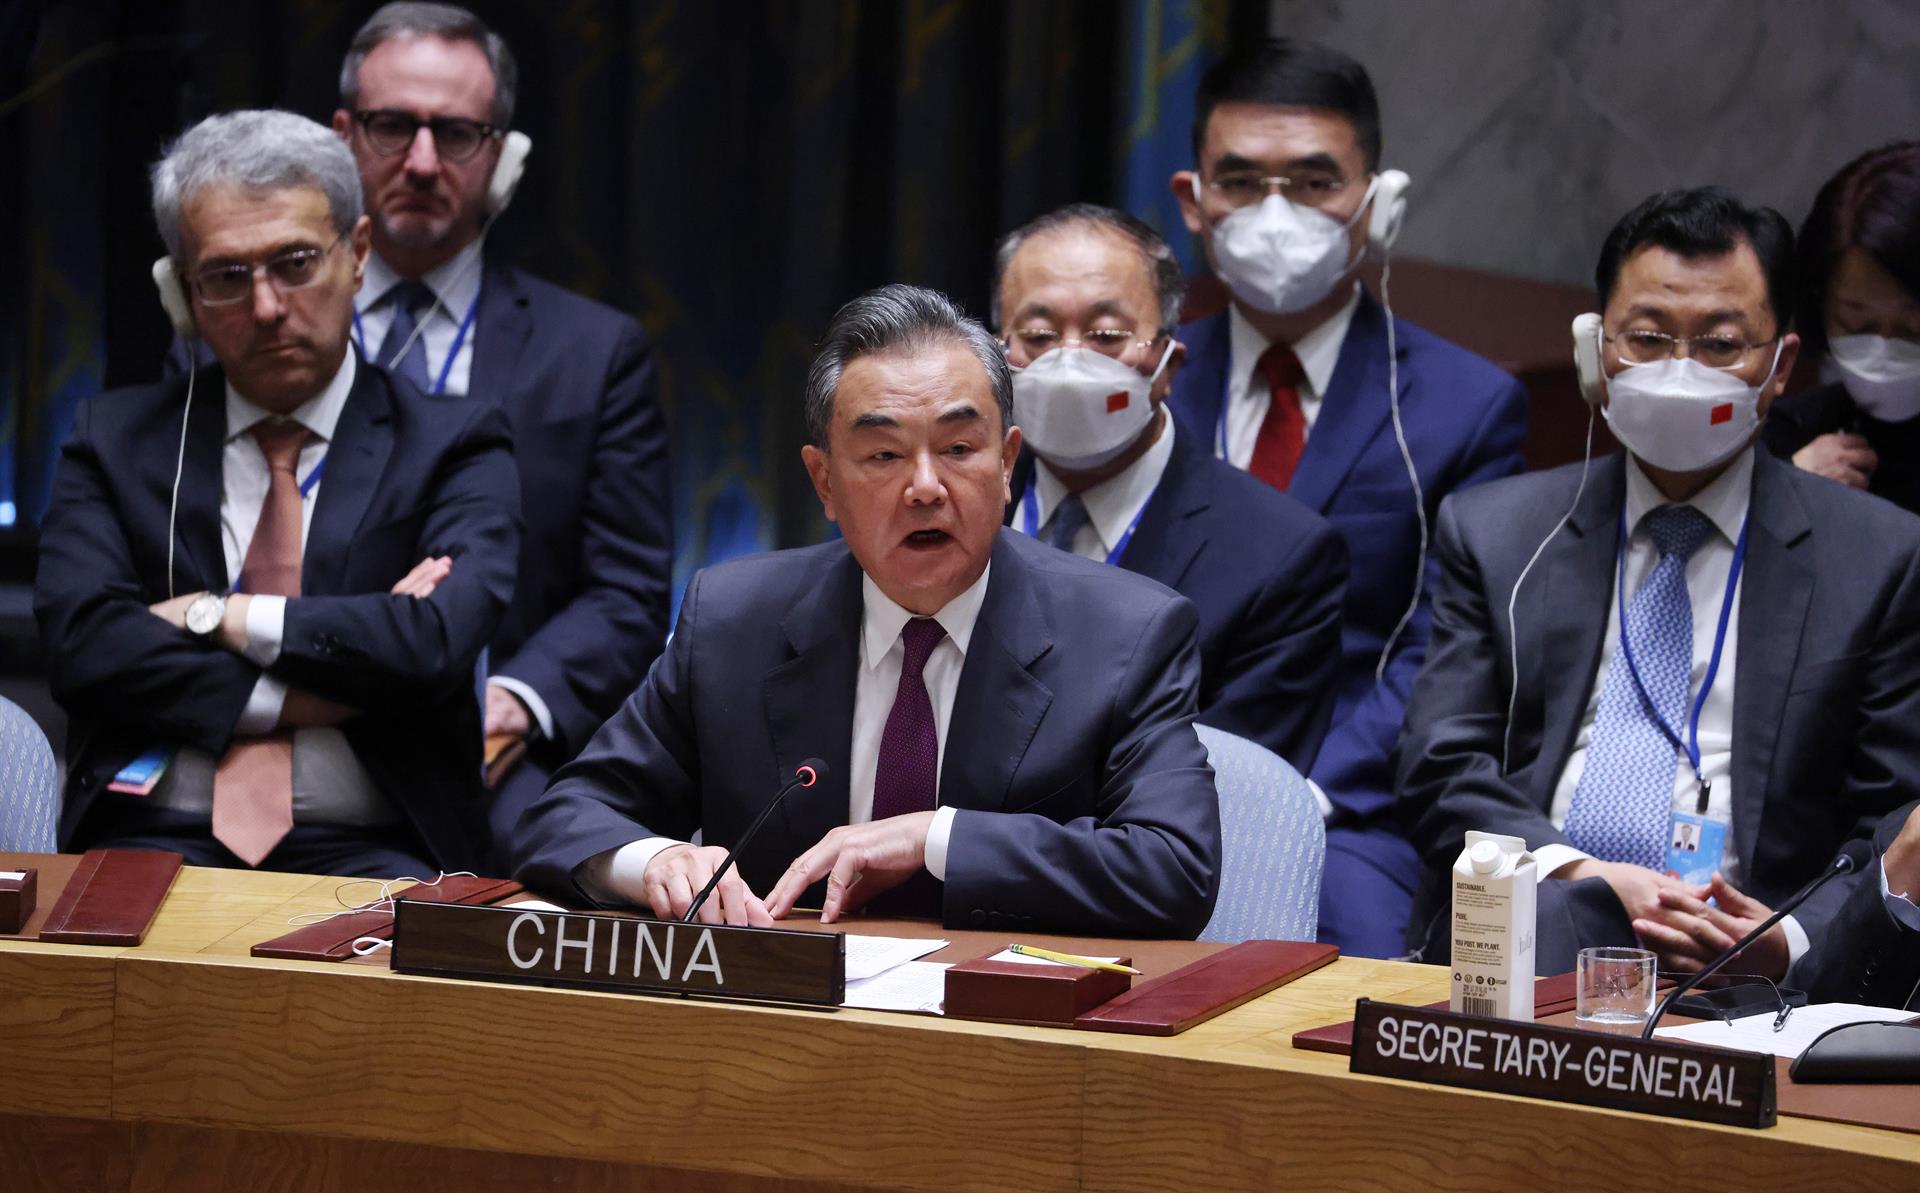 El ministro chino de Exteriores, Wang Yi, habla durante una reunión de alto nivel del Consejo de Seguridad de las Naciones Unidas, en Nueva York (EE.UU.), este 22 de septiembre de 2022. EFE/EPA/Justin Lane